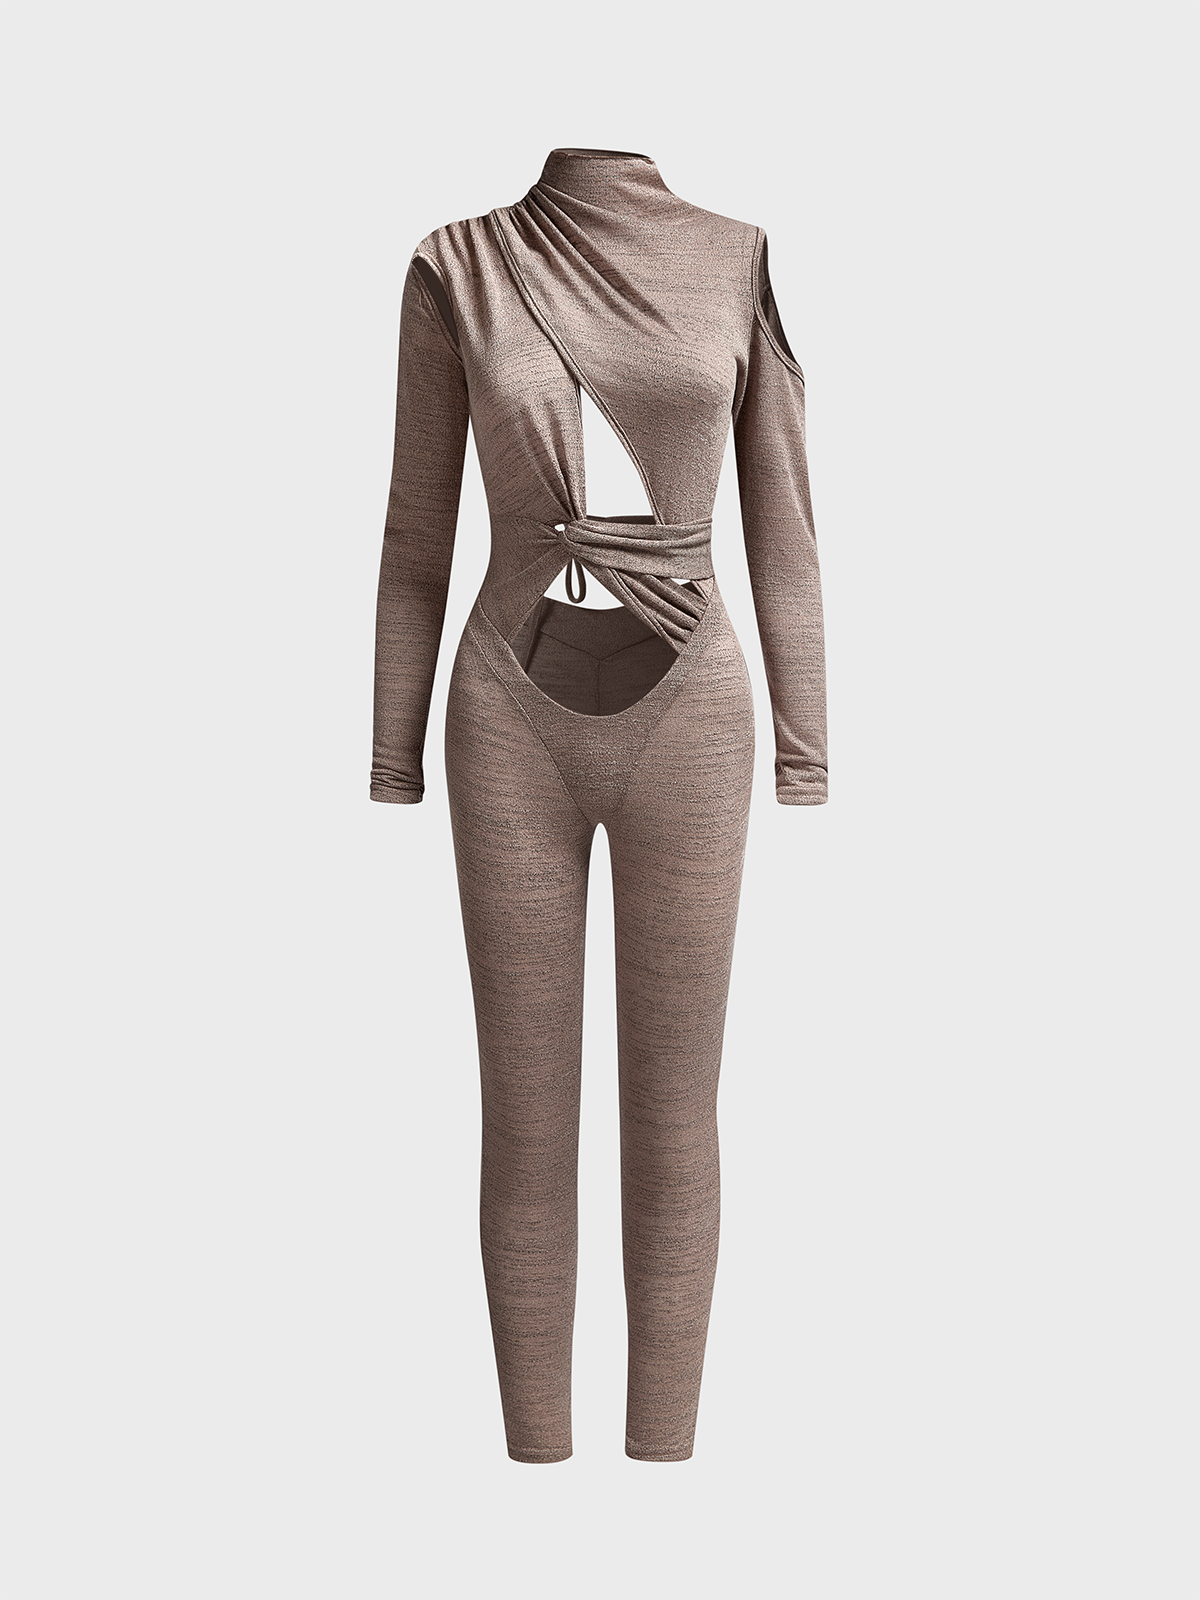 Cut Out Asymmetrical Turtleneck Plain Long Sleeve Jumpsuit